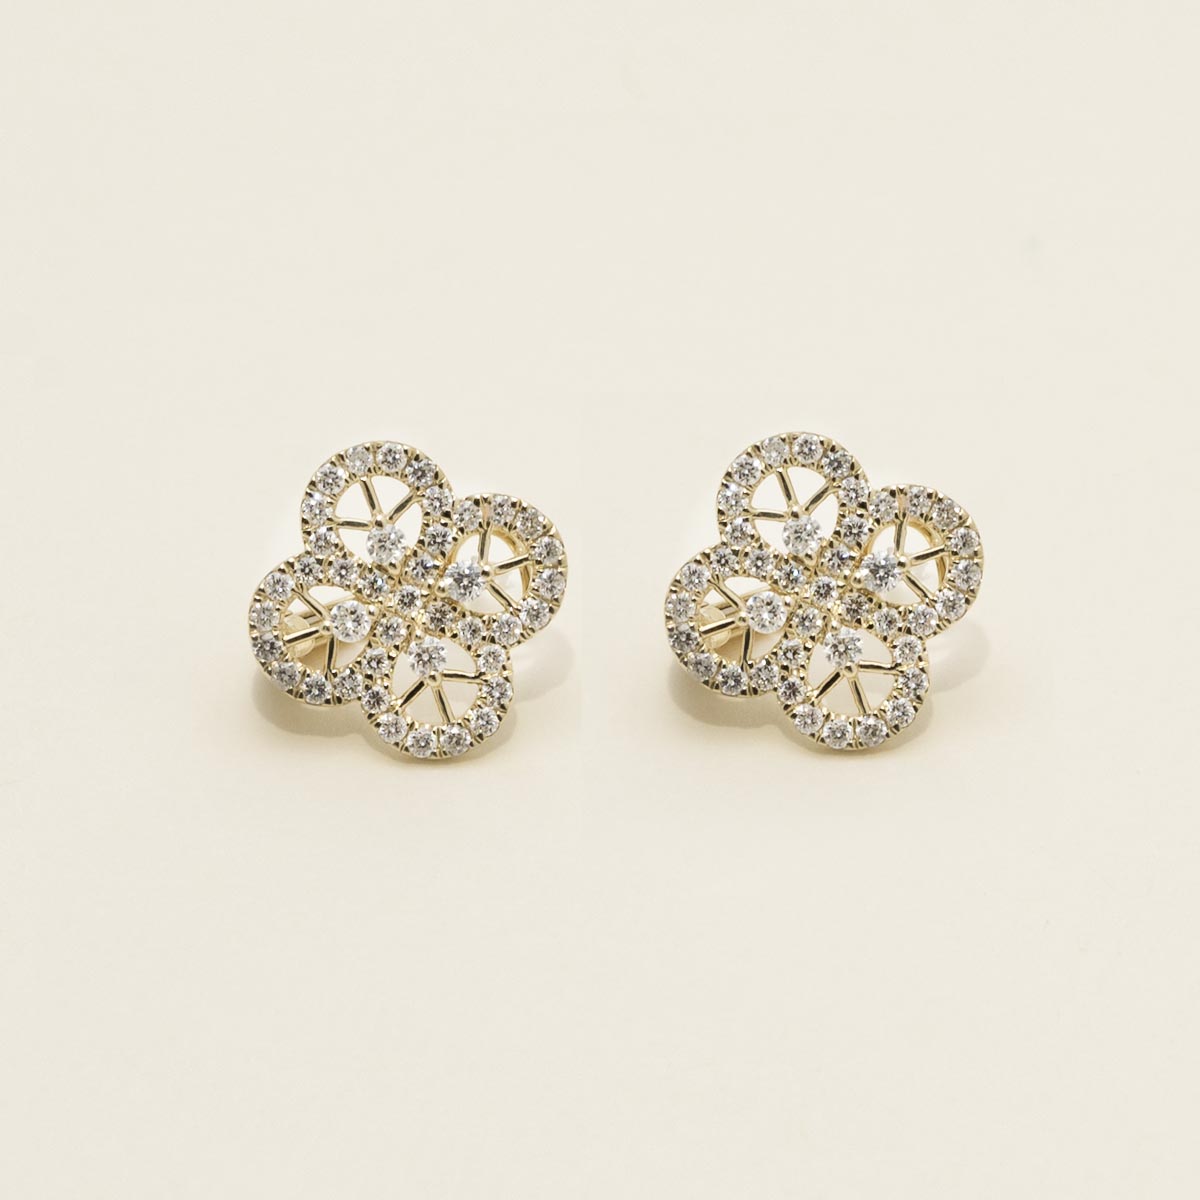 Dabakarov Diamond Flower Earrings in 14kt Yellow Gold (7/8ct tw)